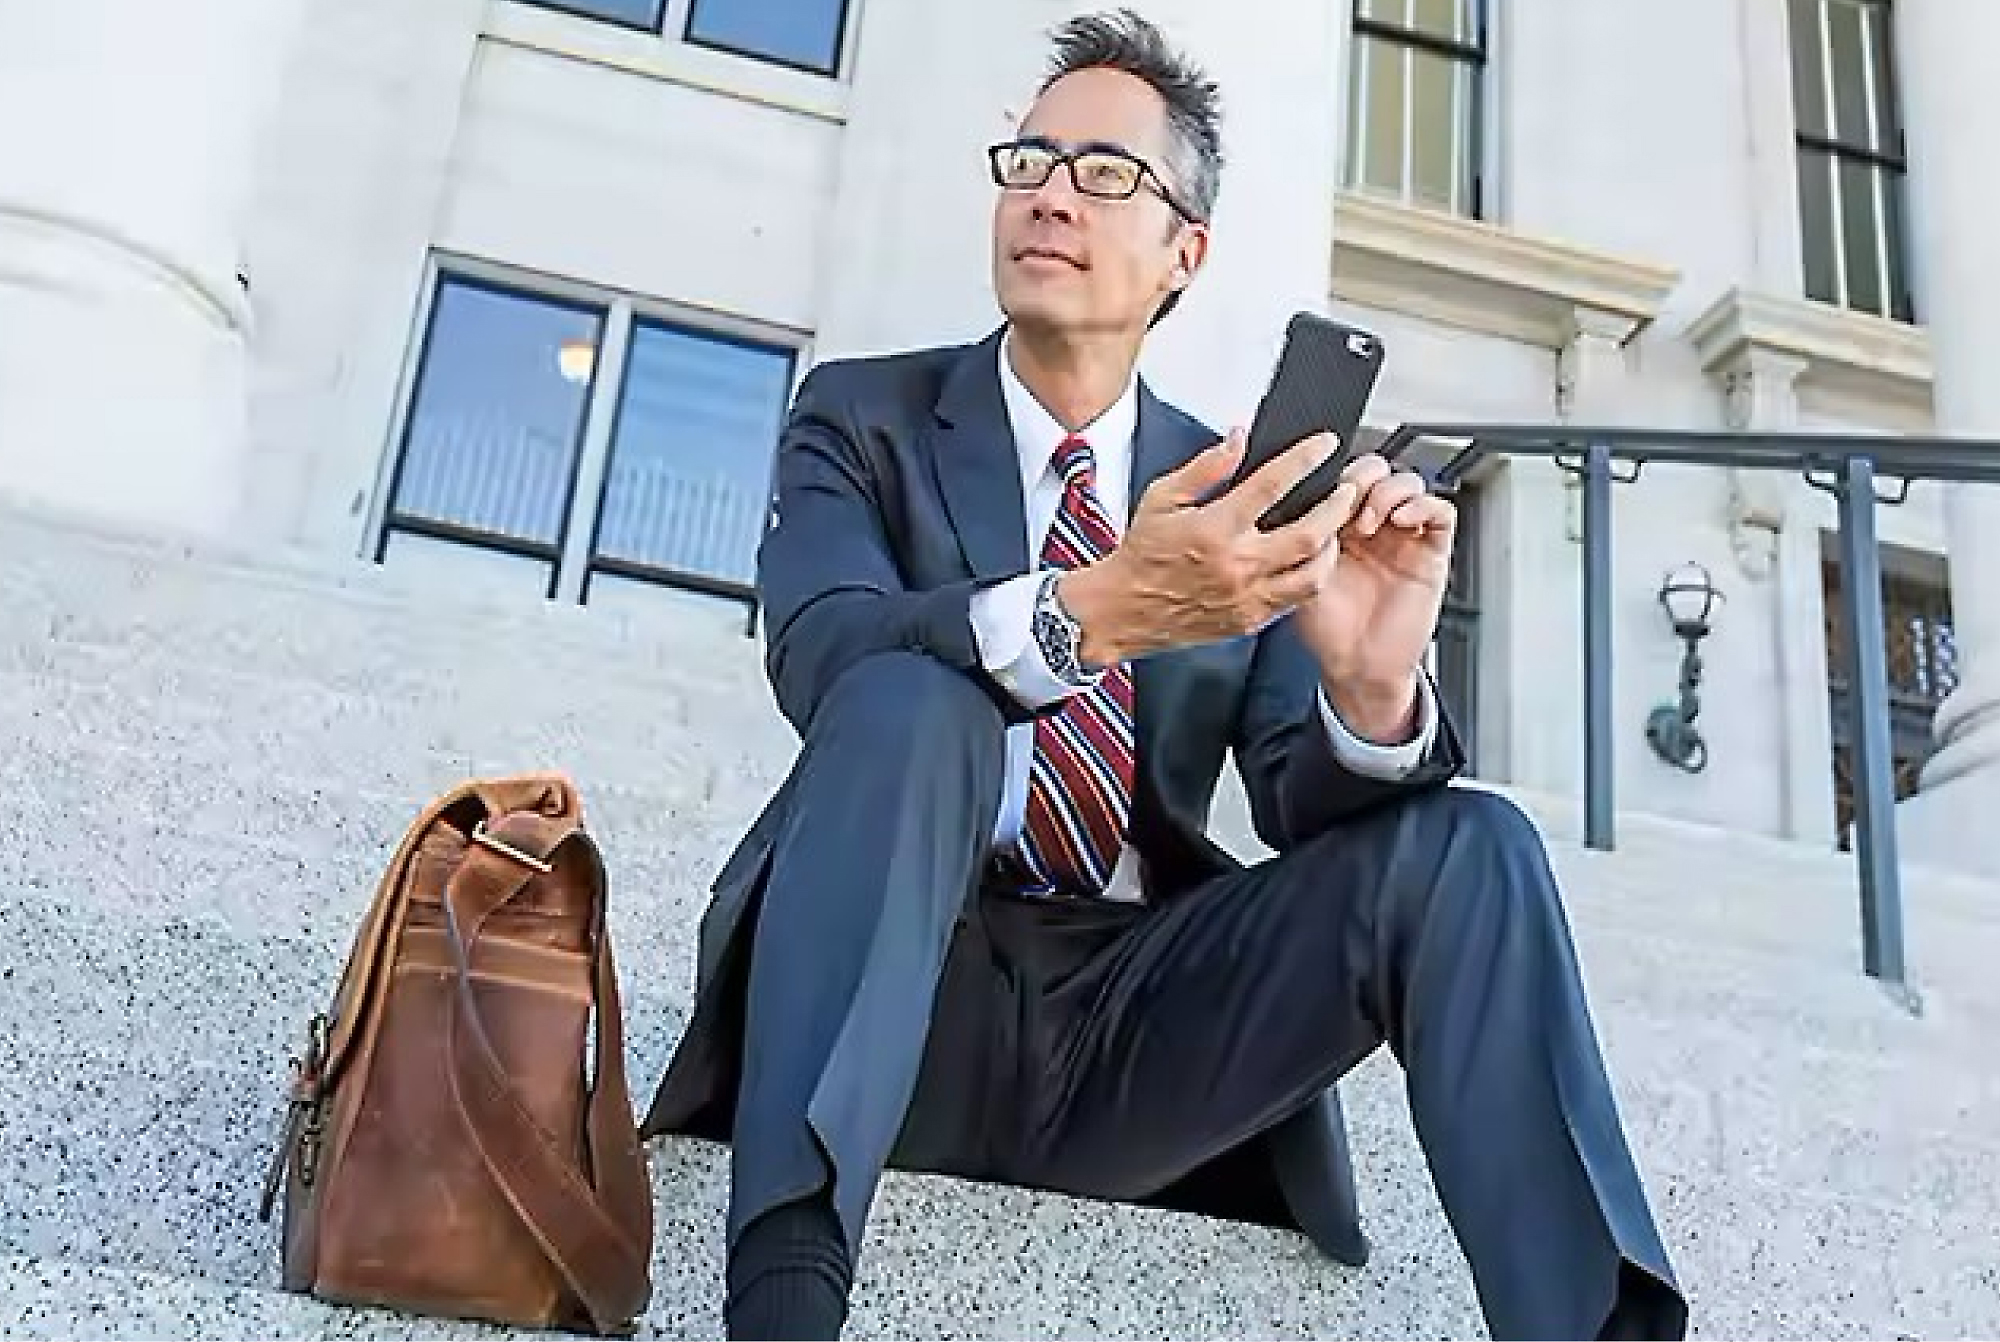 איש עסקים בחליפה ובמשקפיים יושב על מדרגות מחוץ בבניין, משתמש בטלפון עם תיק עור לצדו.